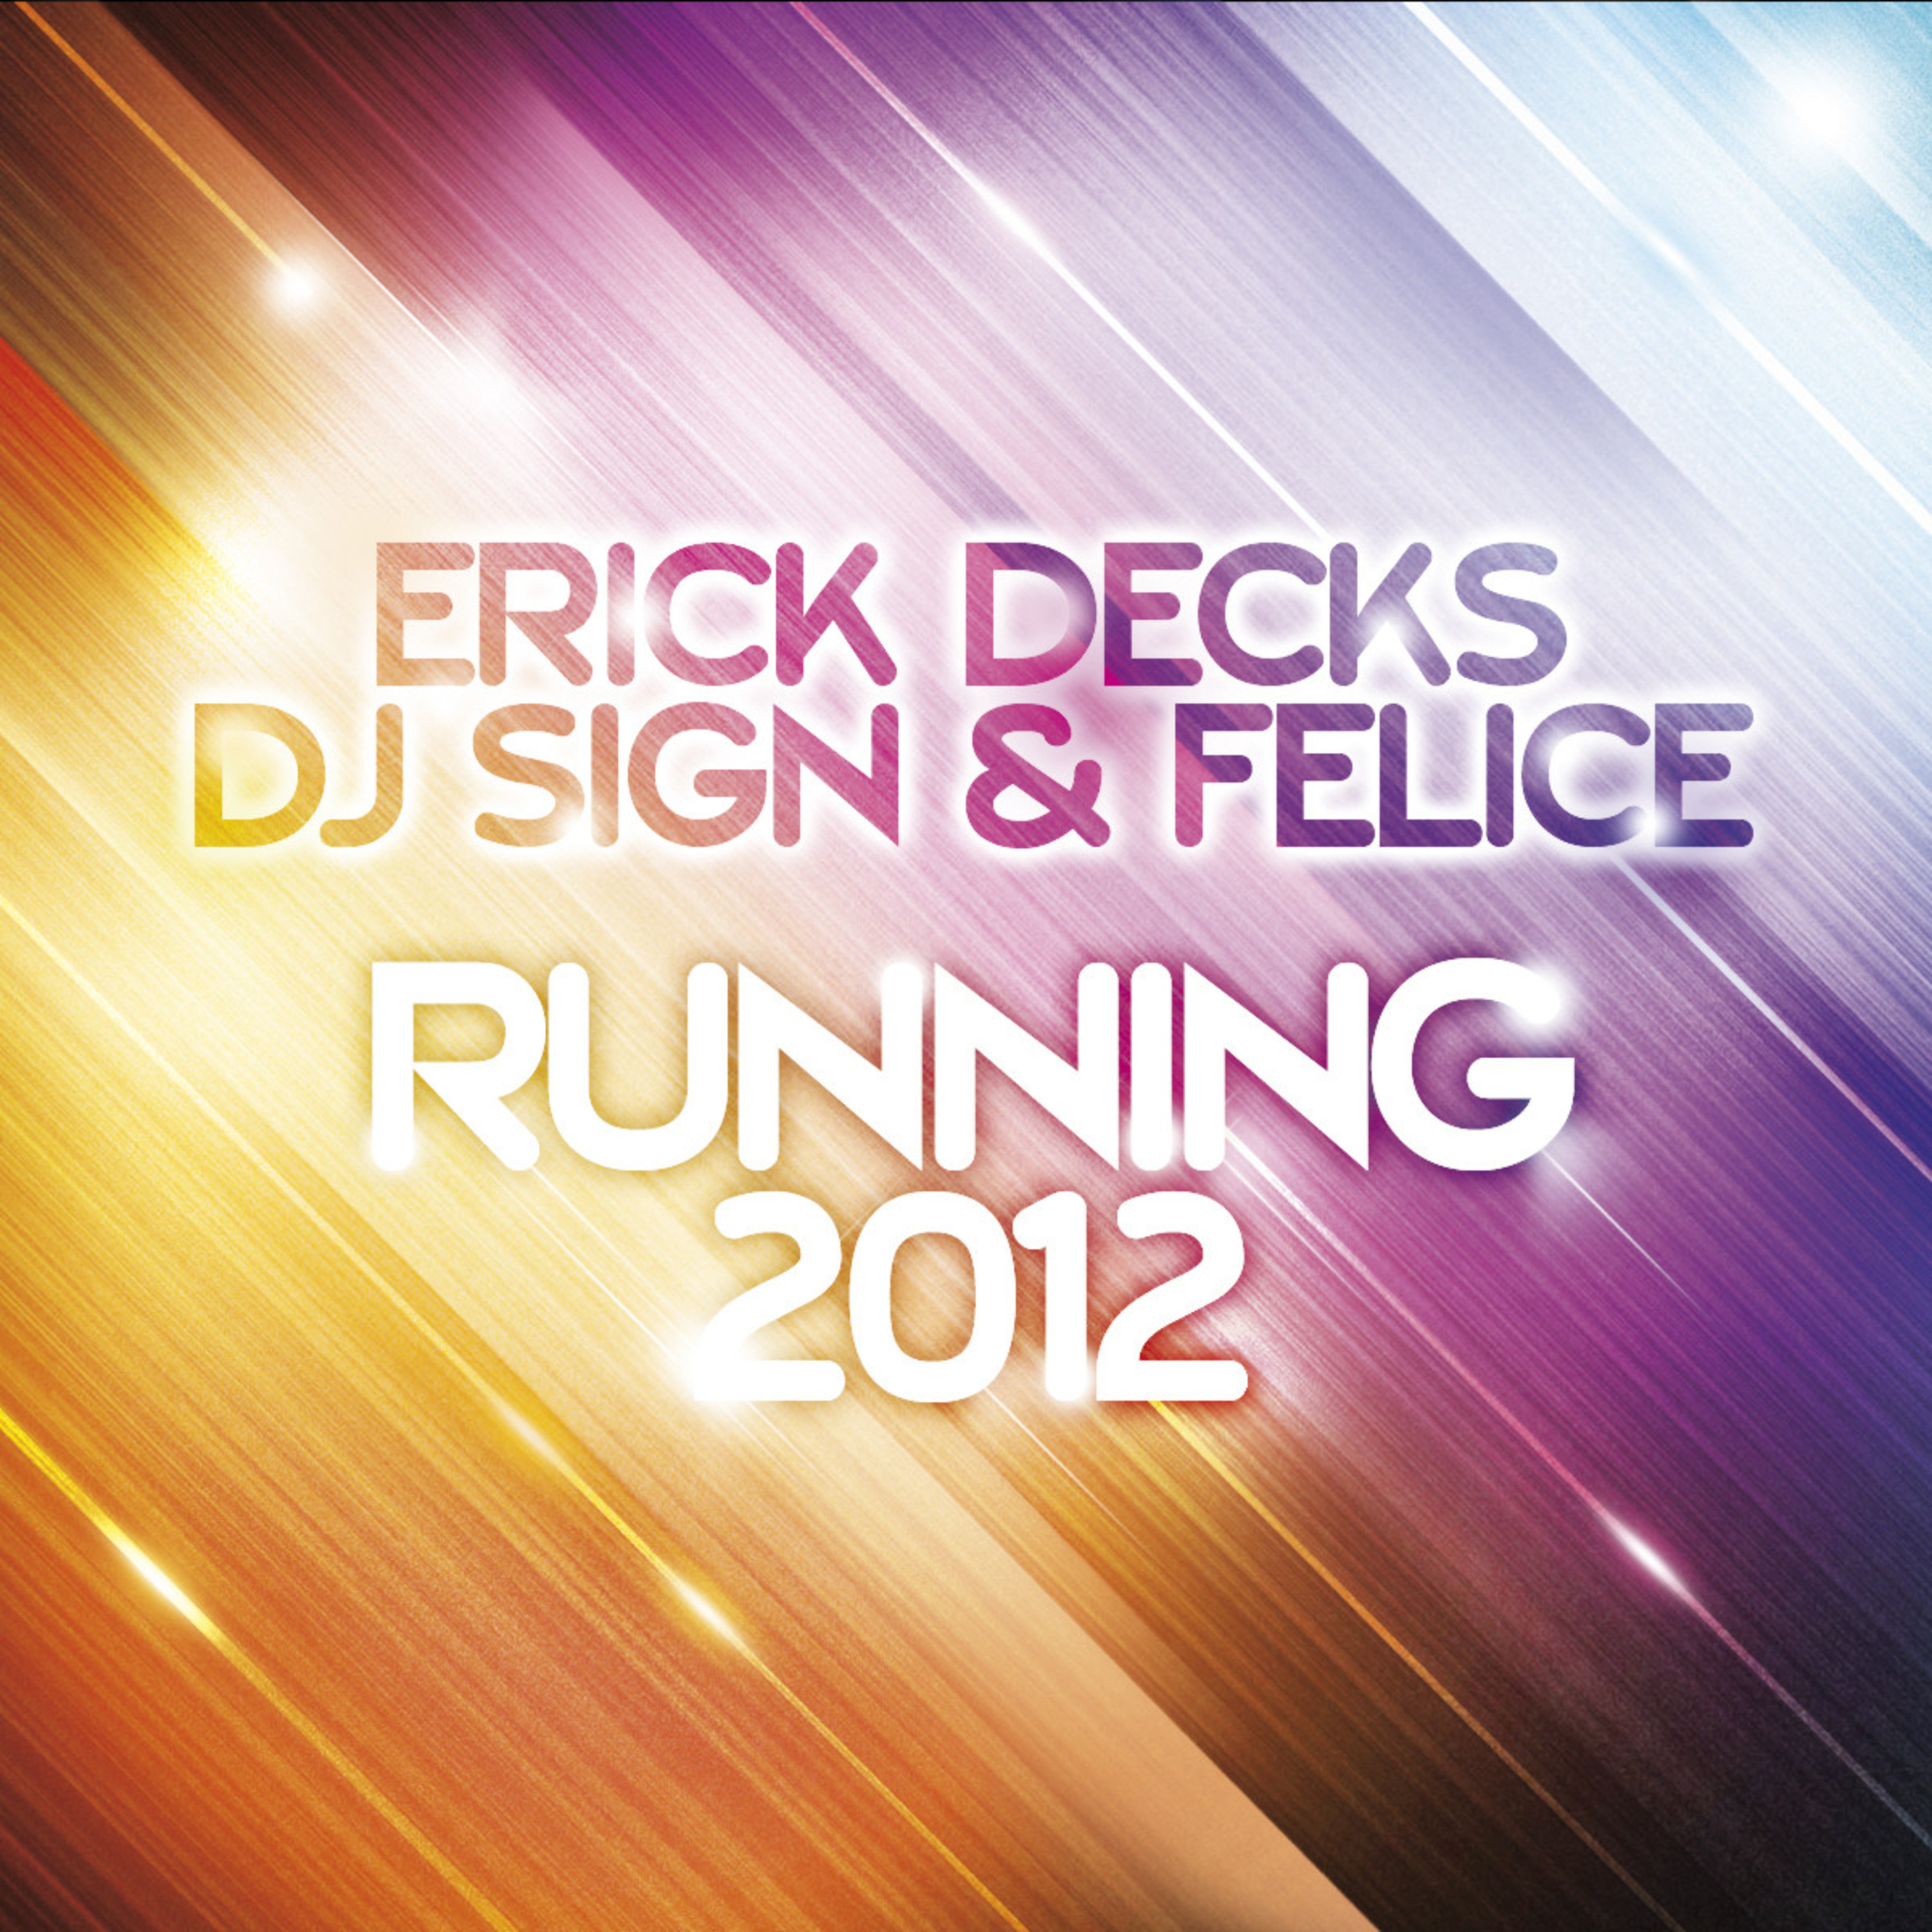 Running 2012 (Original Erick Decks Extended Mix)